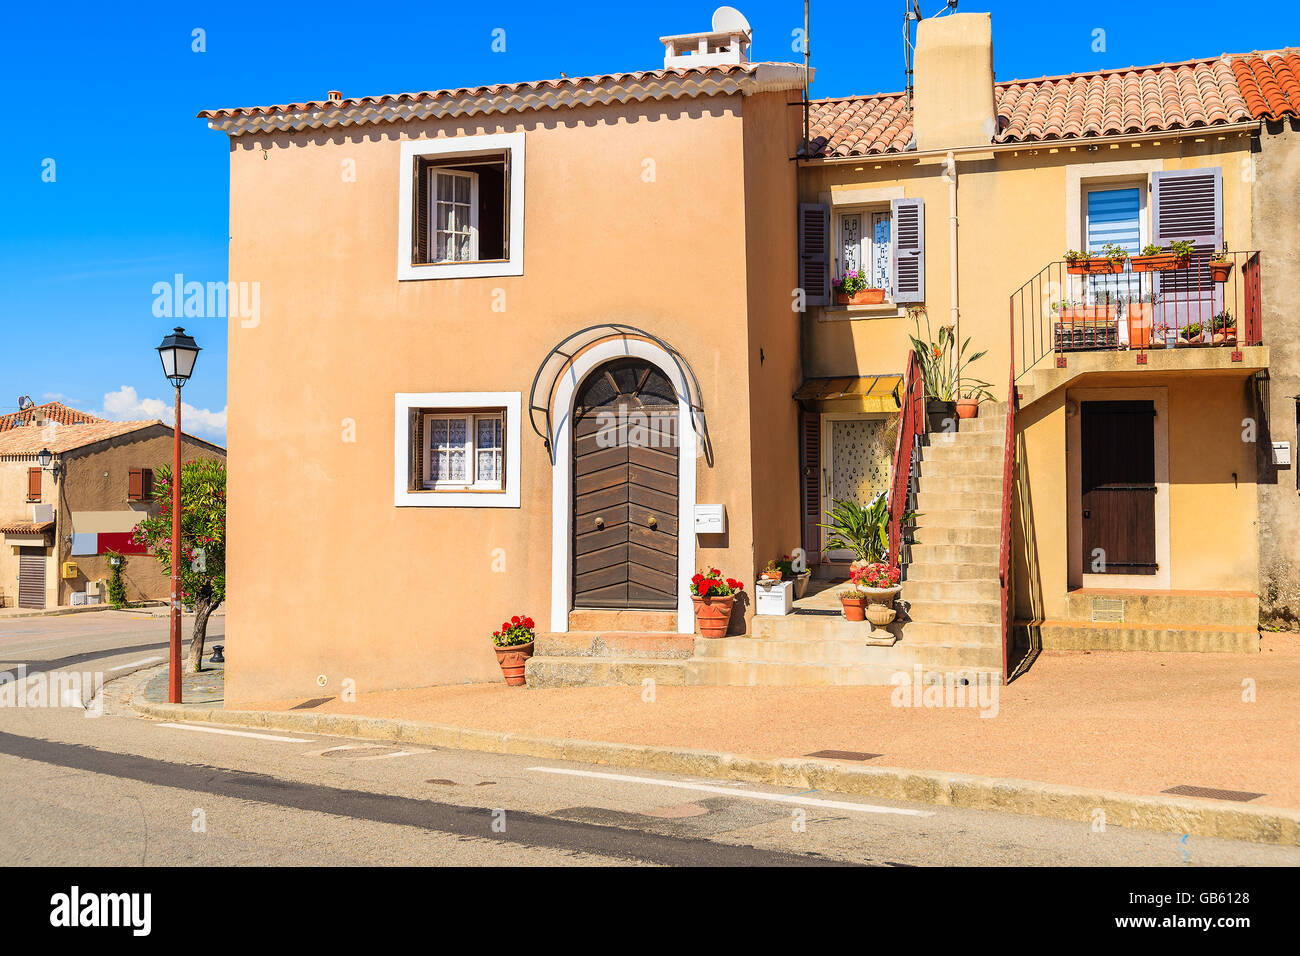 Rue avec maisons typiquement français dans le village de Piana, Corse, France Banque D'Images